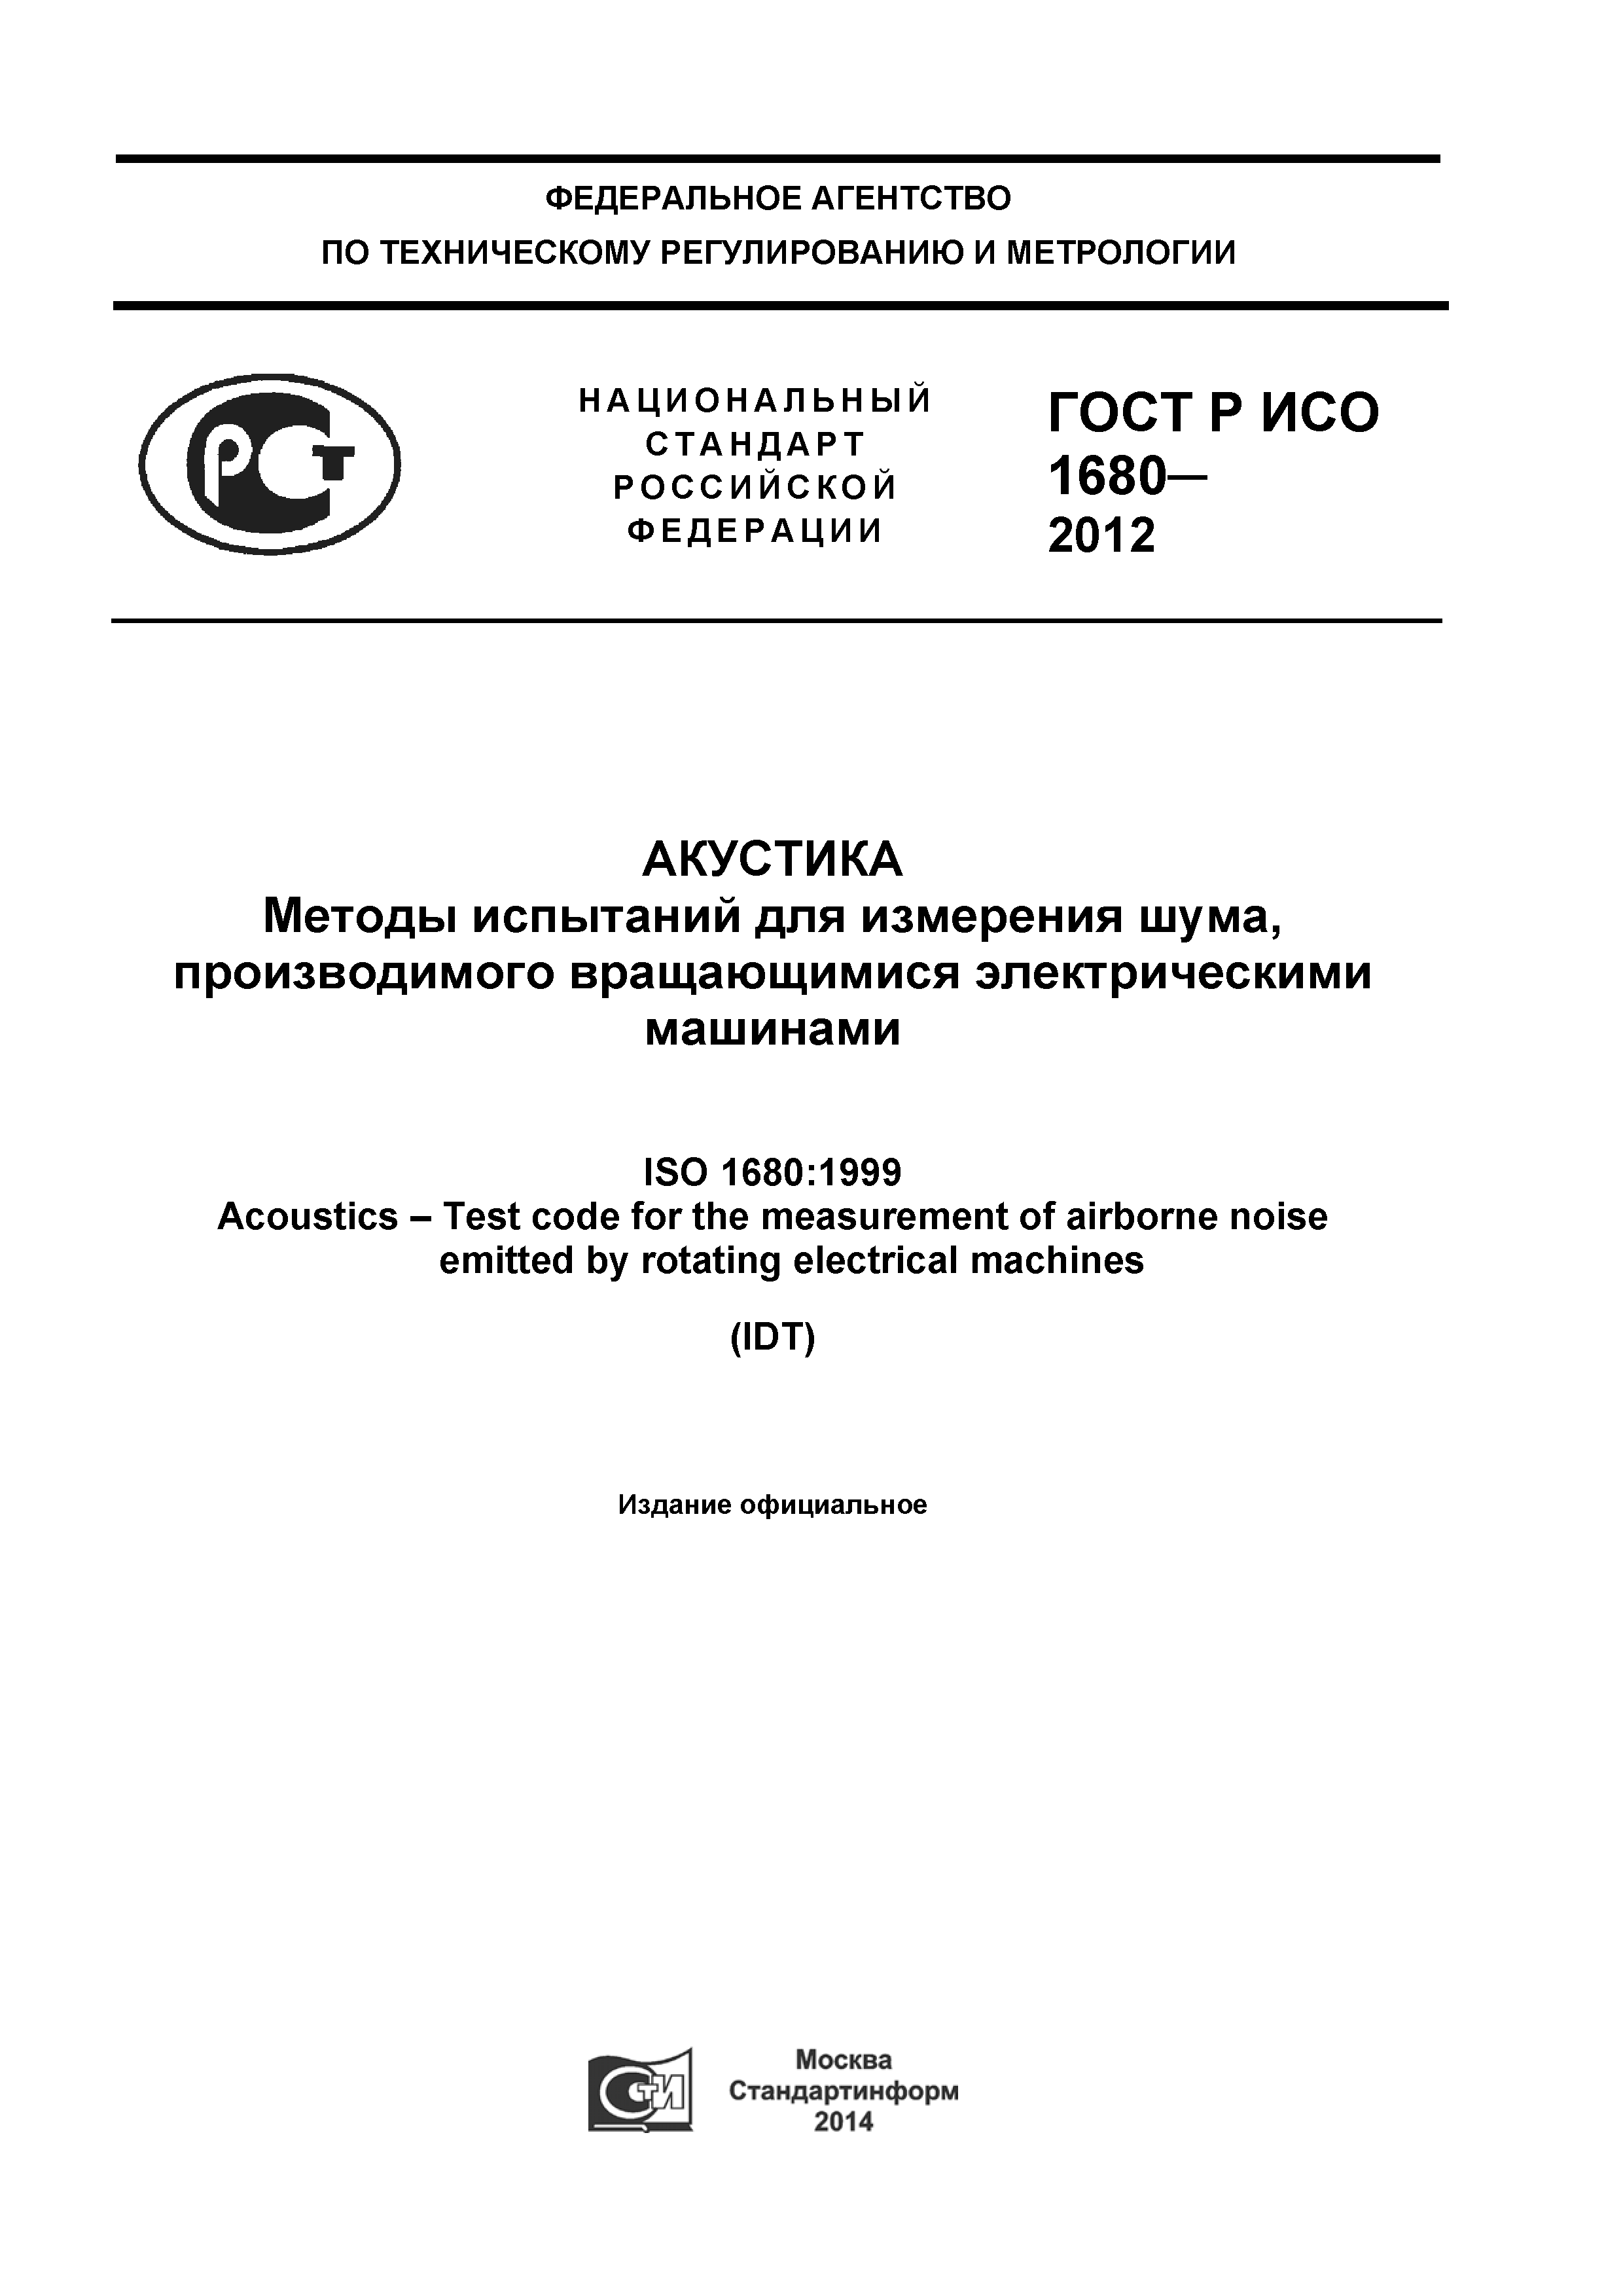 ГОСТ Р ИСО 1680-2012